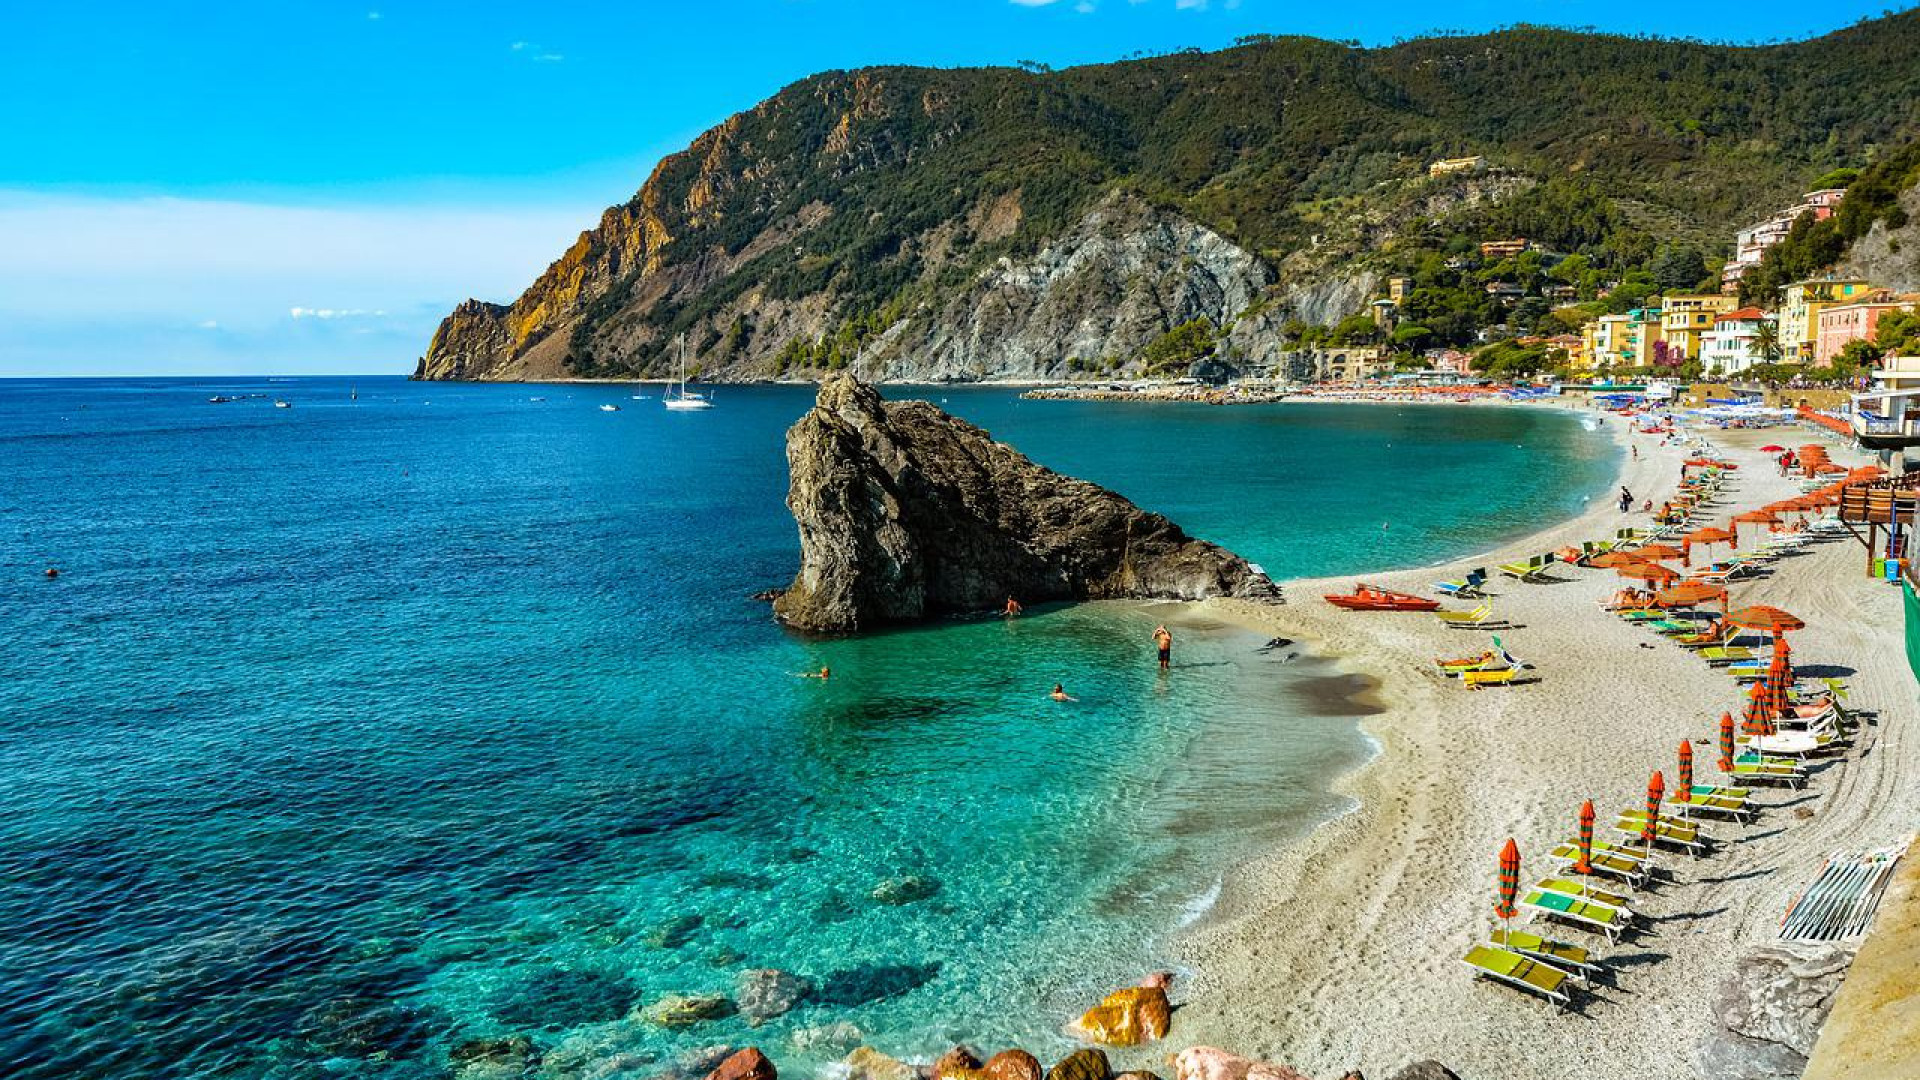 Location de vacances en PACA : découvrez la beauté de la Côte d'Azur !